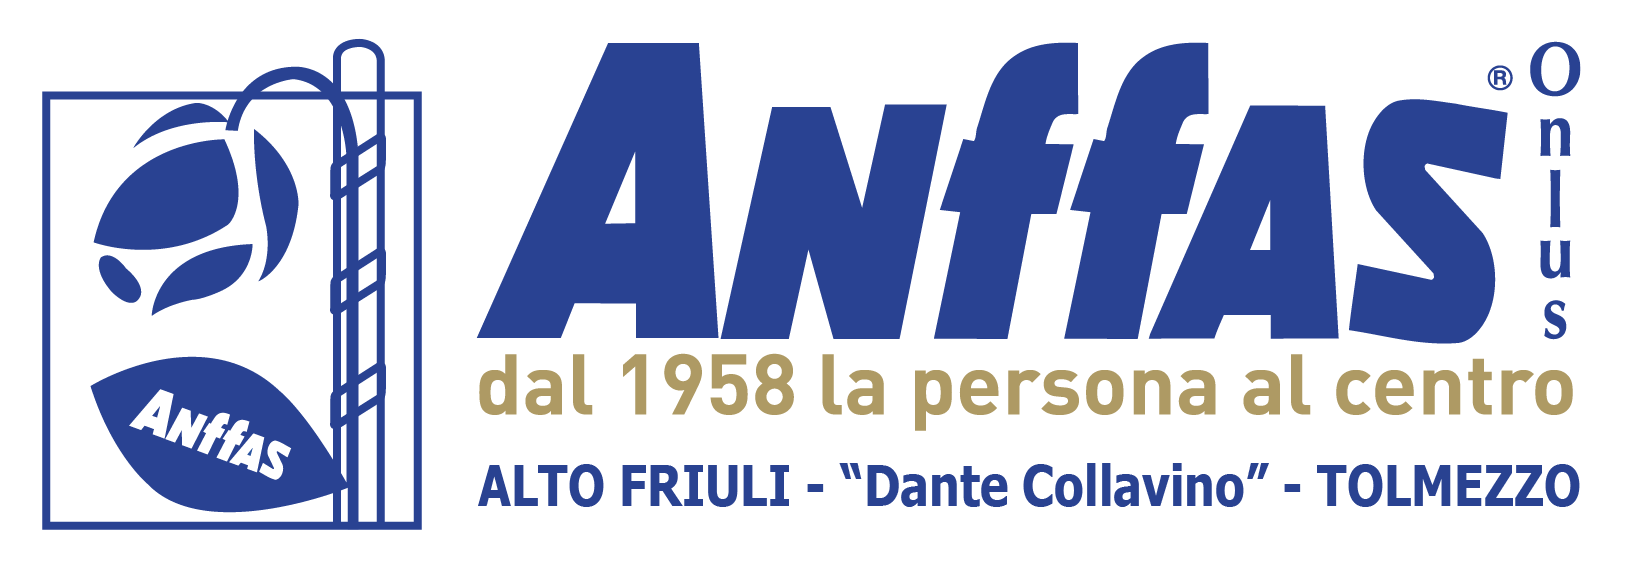 logo anfass